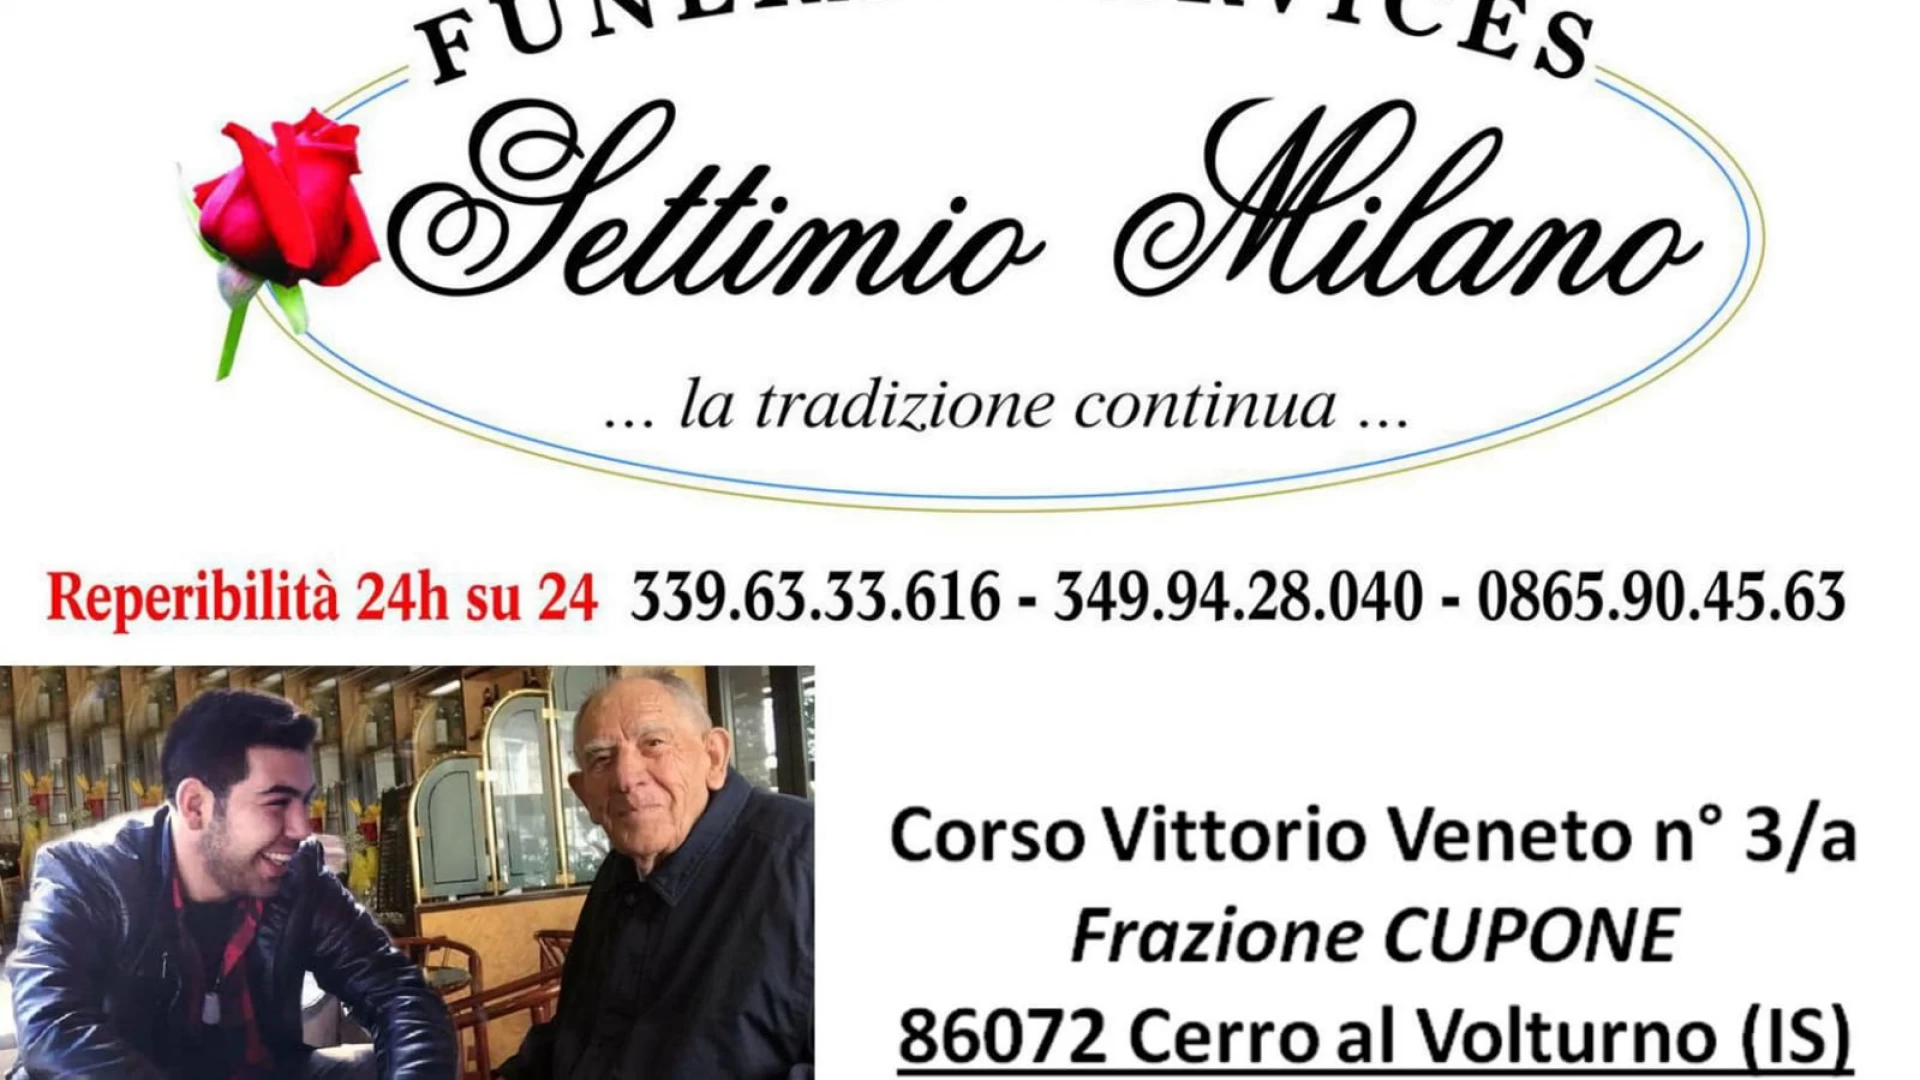 Funeral Services, la  nuova azienda di Settimio Milano Junior. Domenica la benedizione dei locali a Cupone. Reperibilità h24 e cortesia alla base dei servizi offerti.